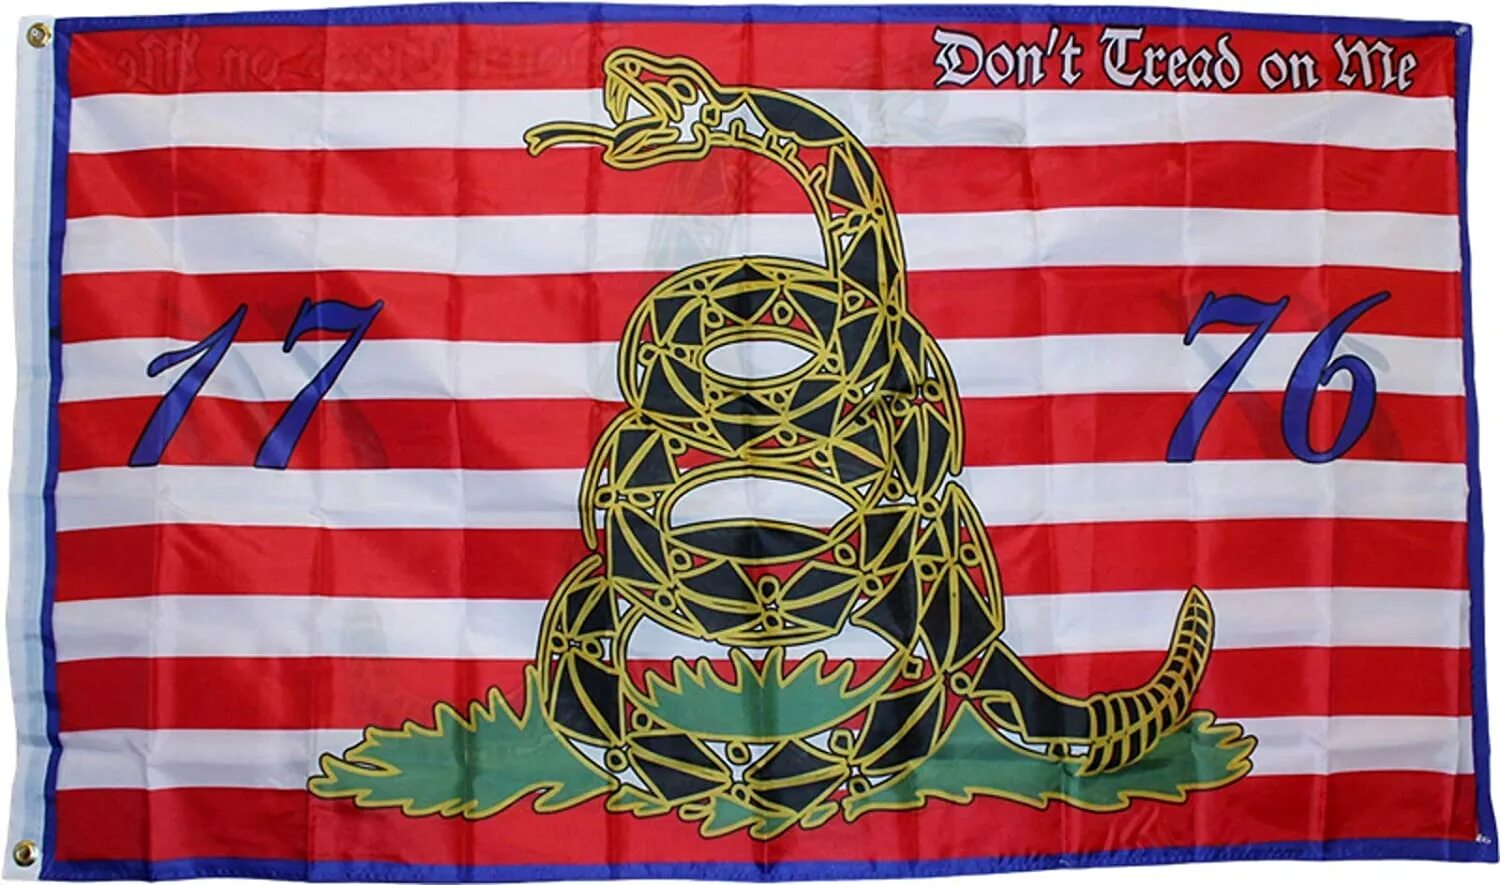 Первый флаг США со змеей. Don't Tread on me. Don't Tread on me Single 1776. Don't Tread on me Single 1776 Shirt. Флаги 1.16 5